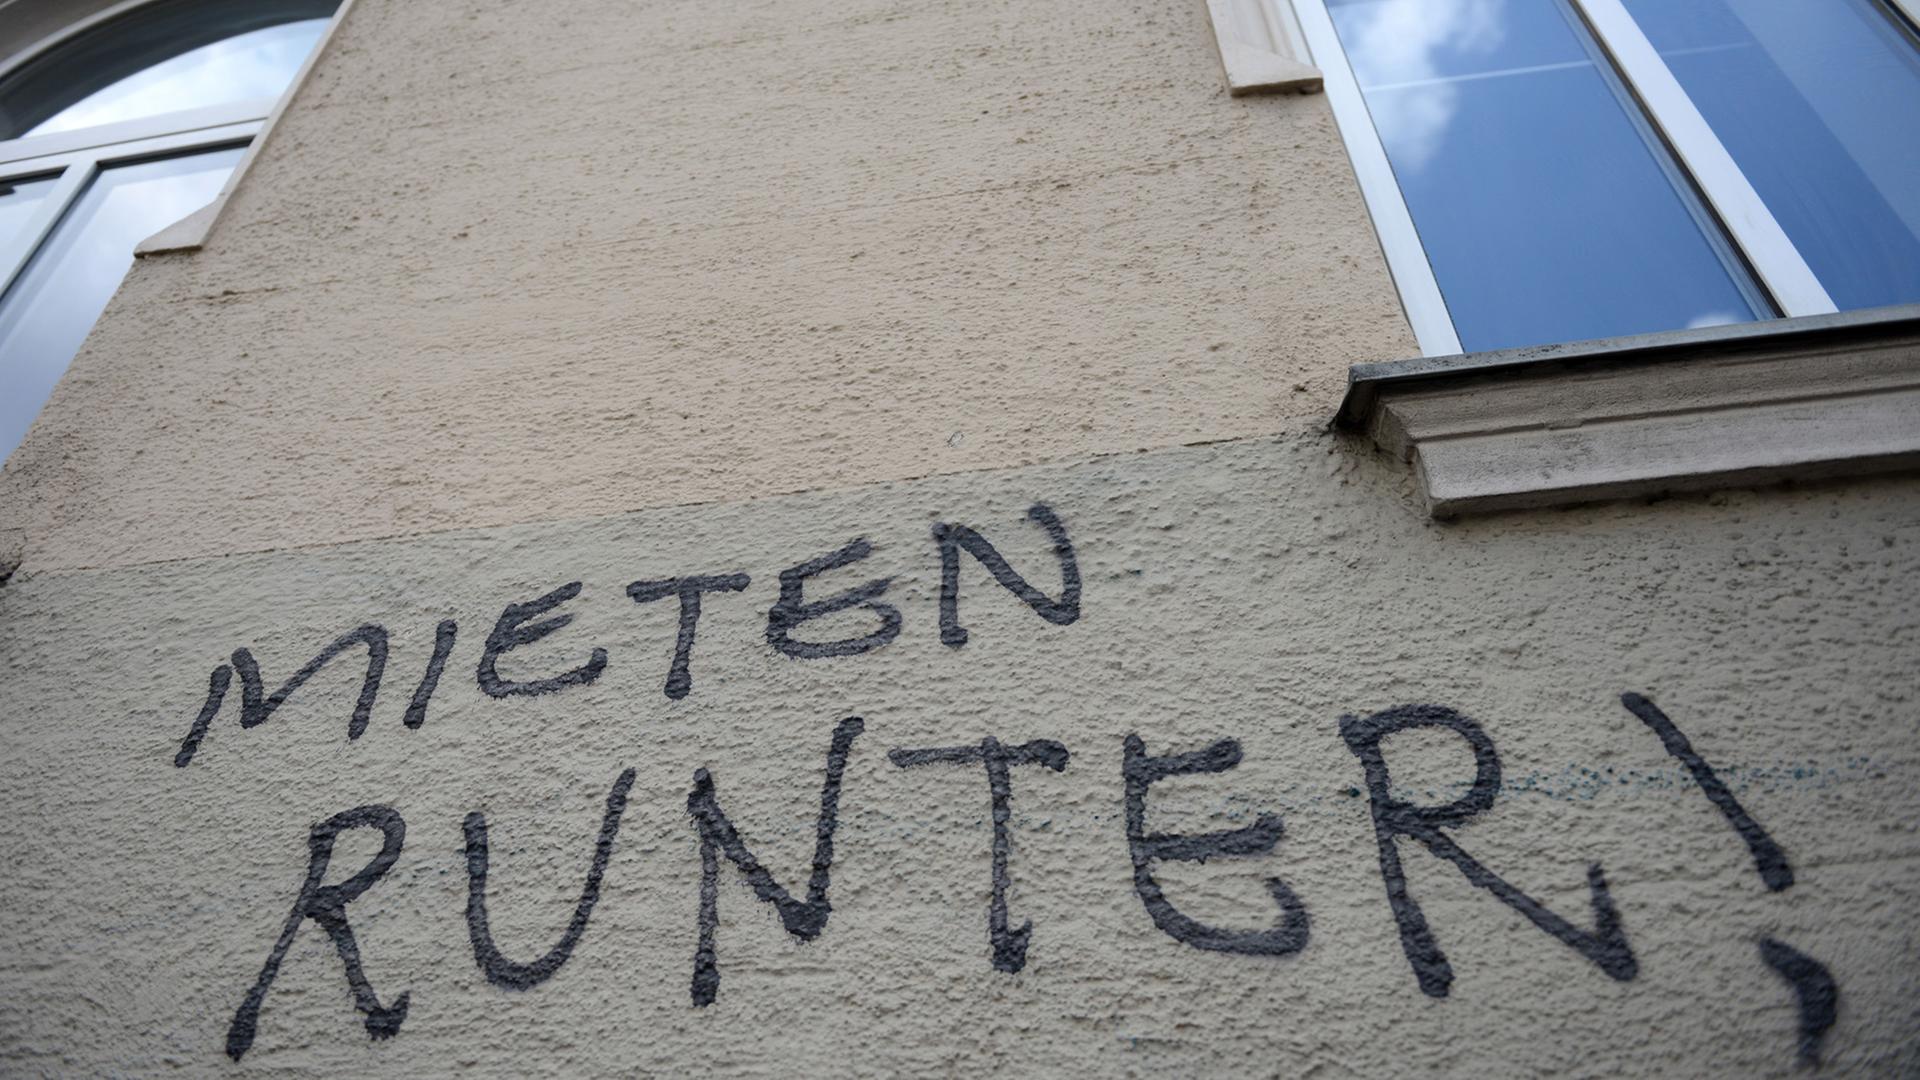 "Mieten runter!" steht an der Fassade eines Hauses in München.